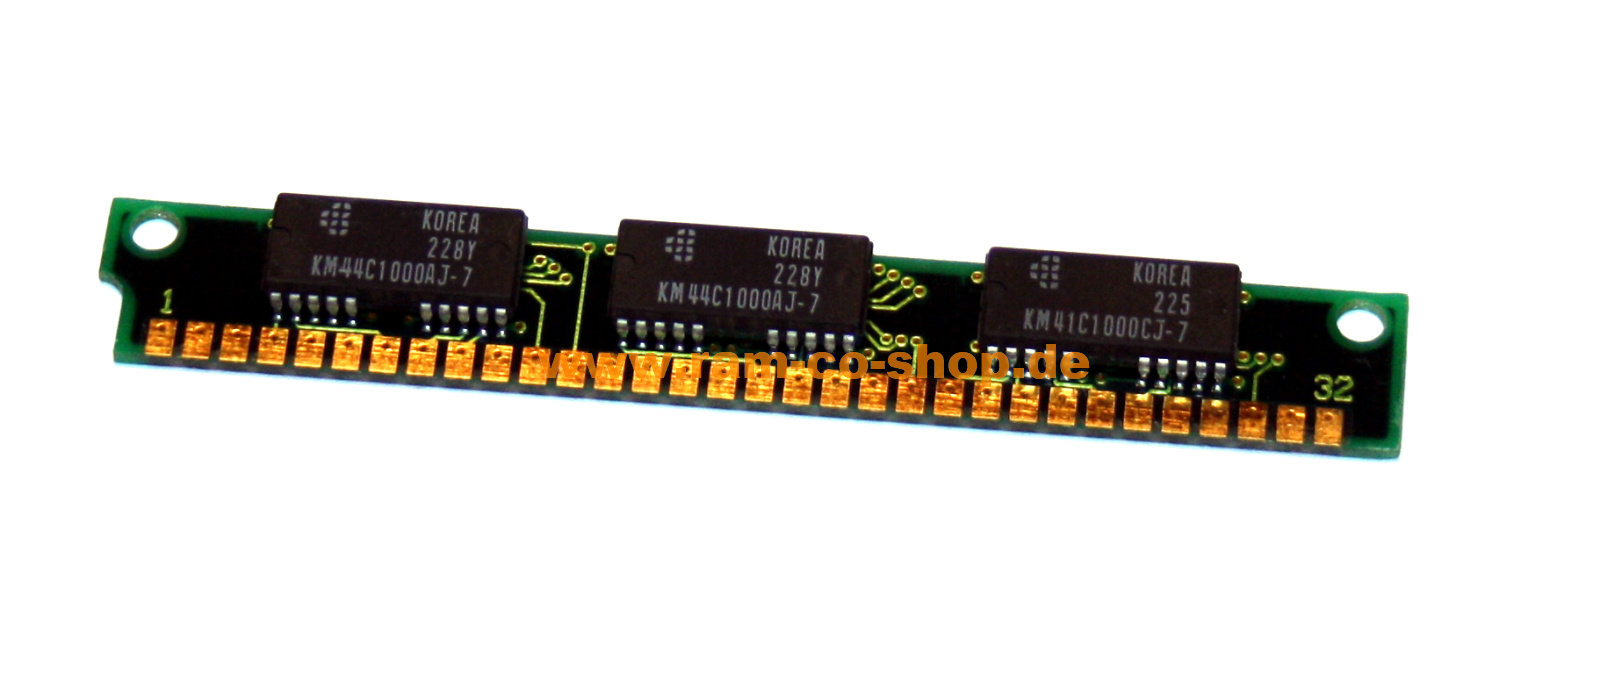 1 MB SIMM 30-pin 70 NS 3-Chip 1mx9 Chip: 2x km44c1000aj-7 + 1x km41c1000cj-7